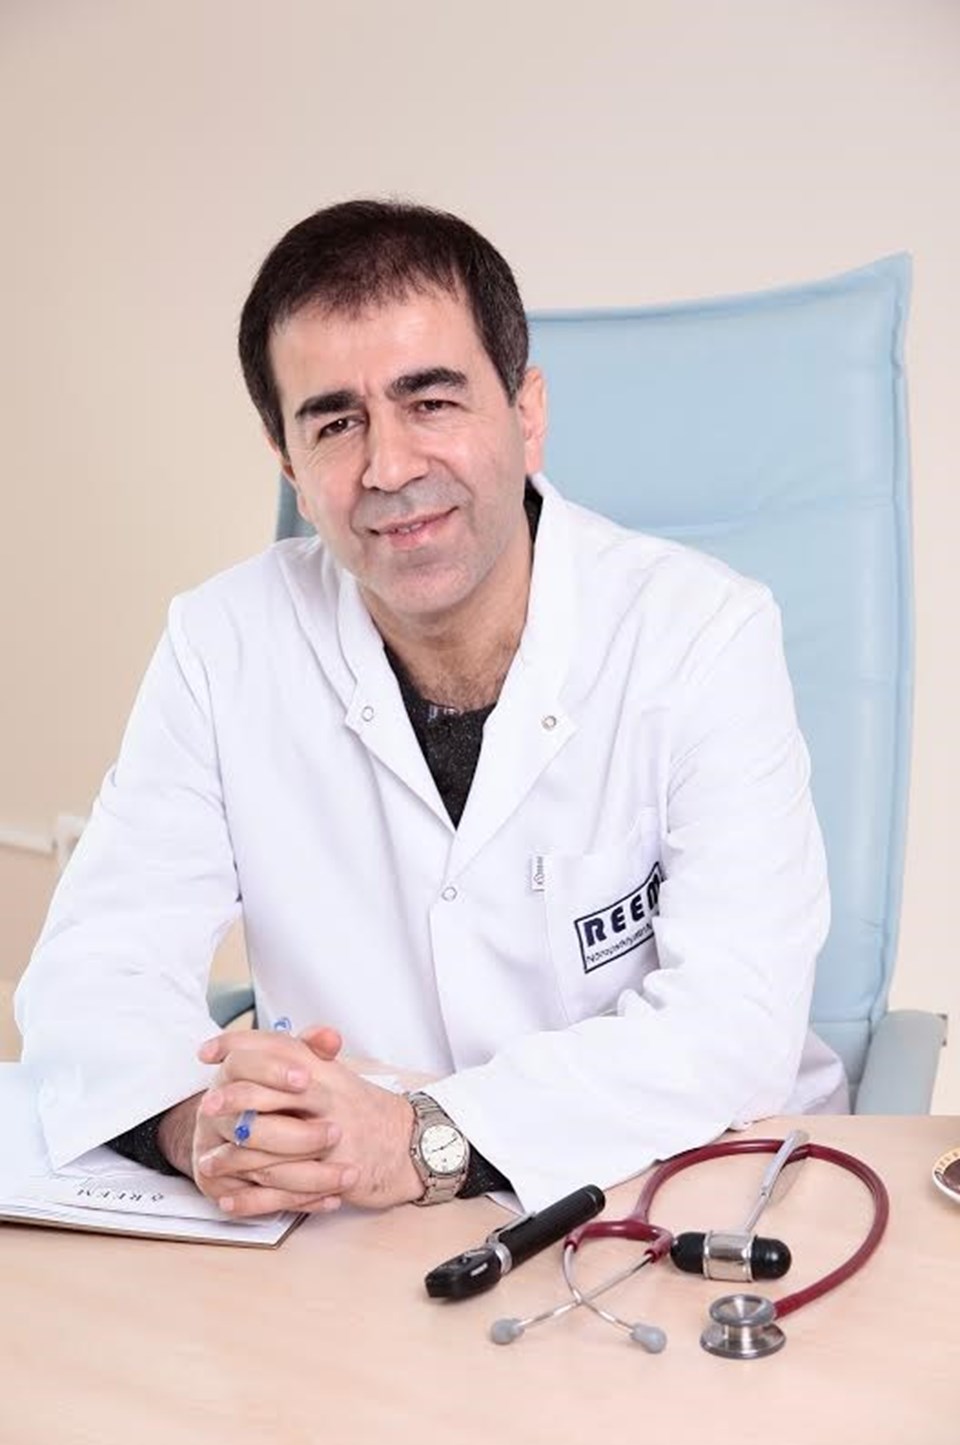 Uzm. Dr. Mehmet Yavuz

